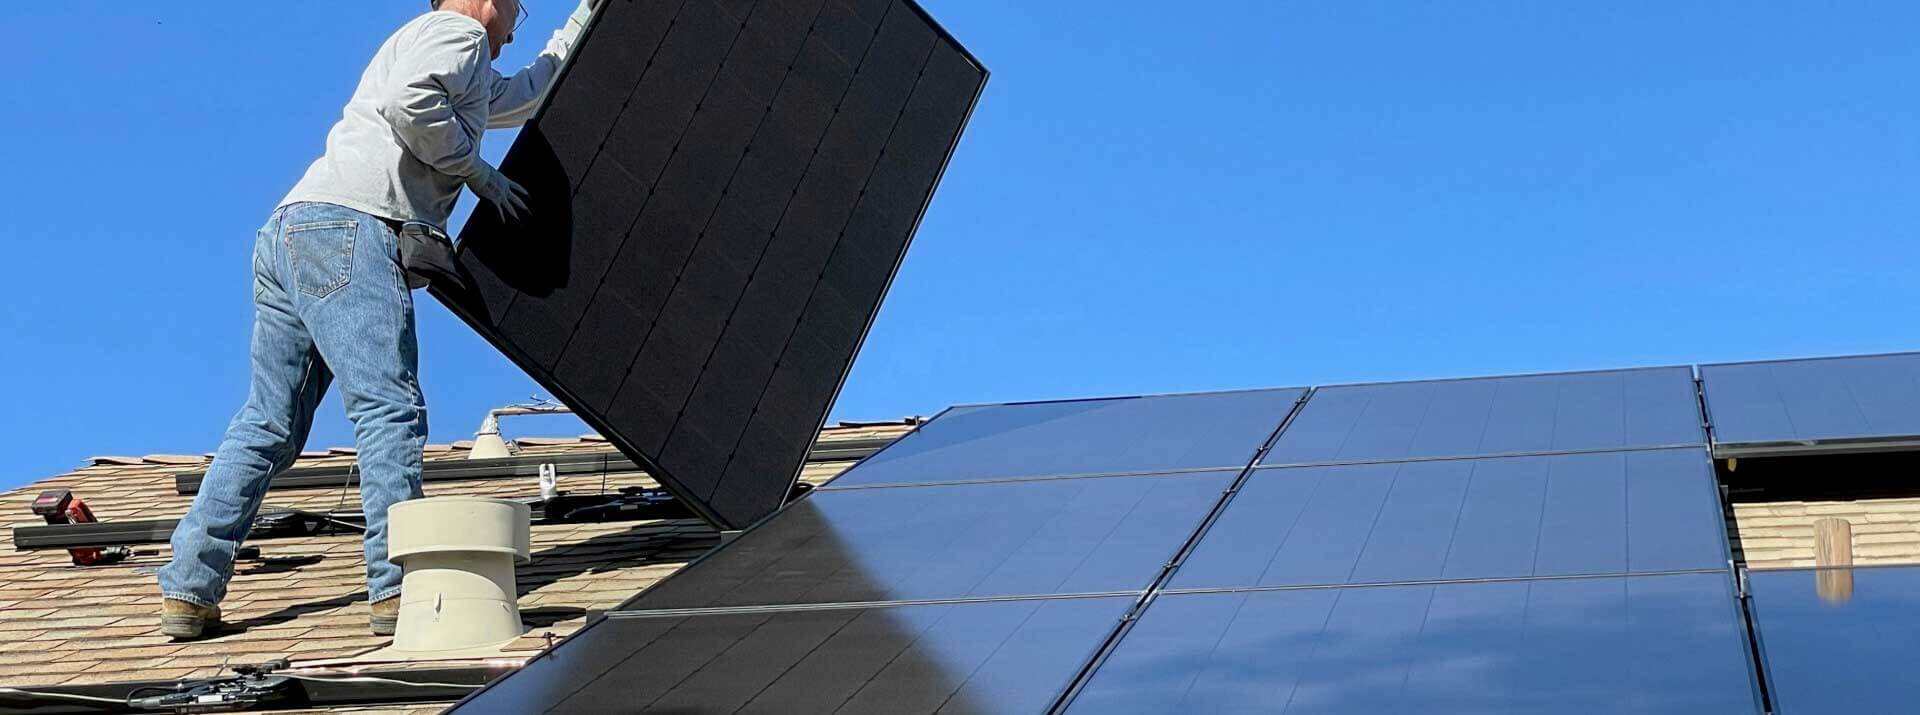 Un installatore su un tetto monta un pannello fotovoltaico